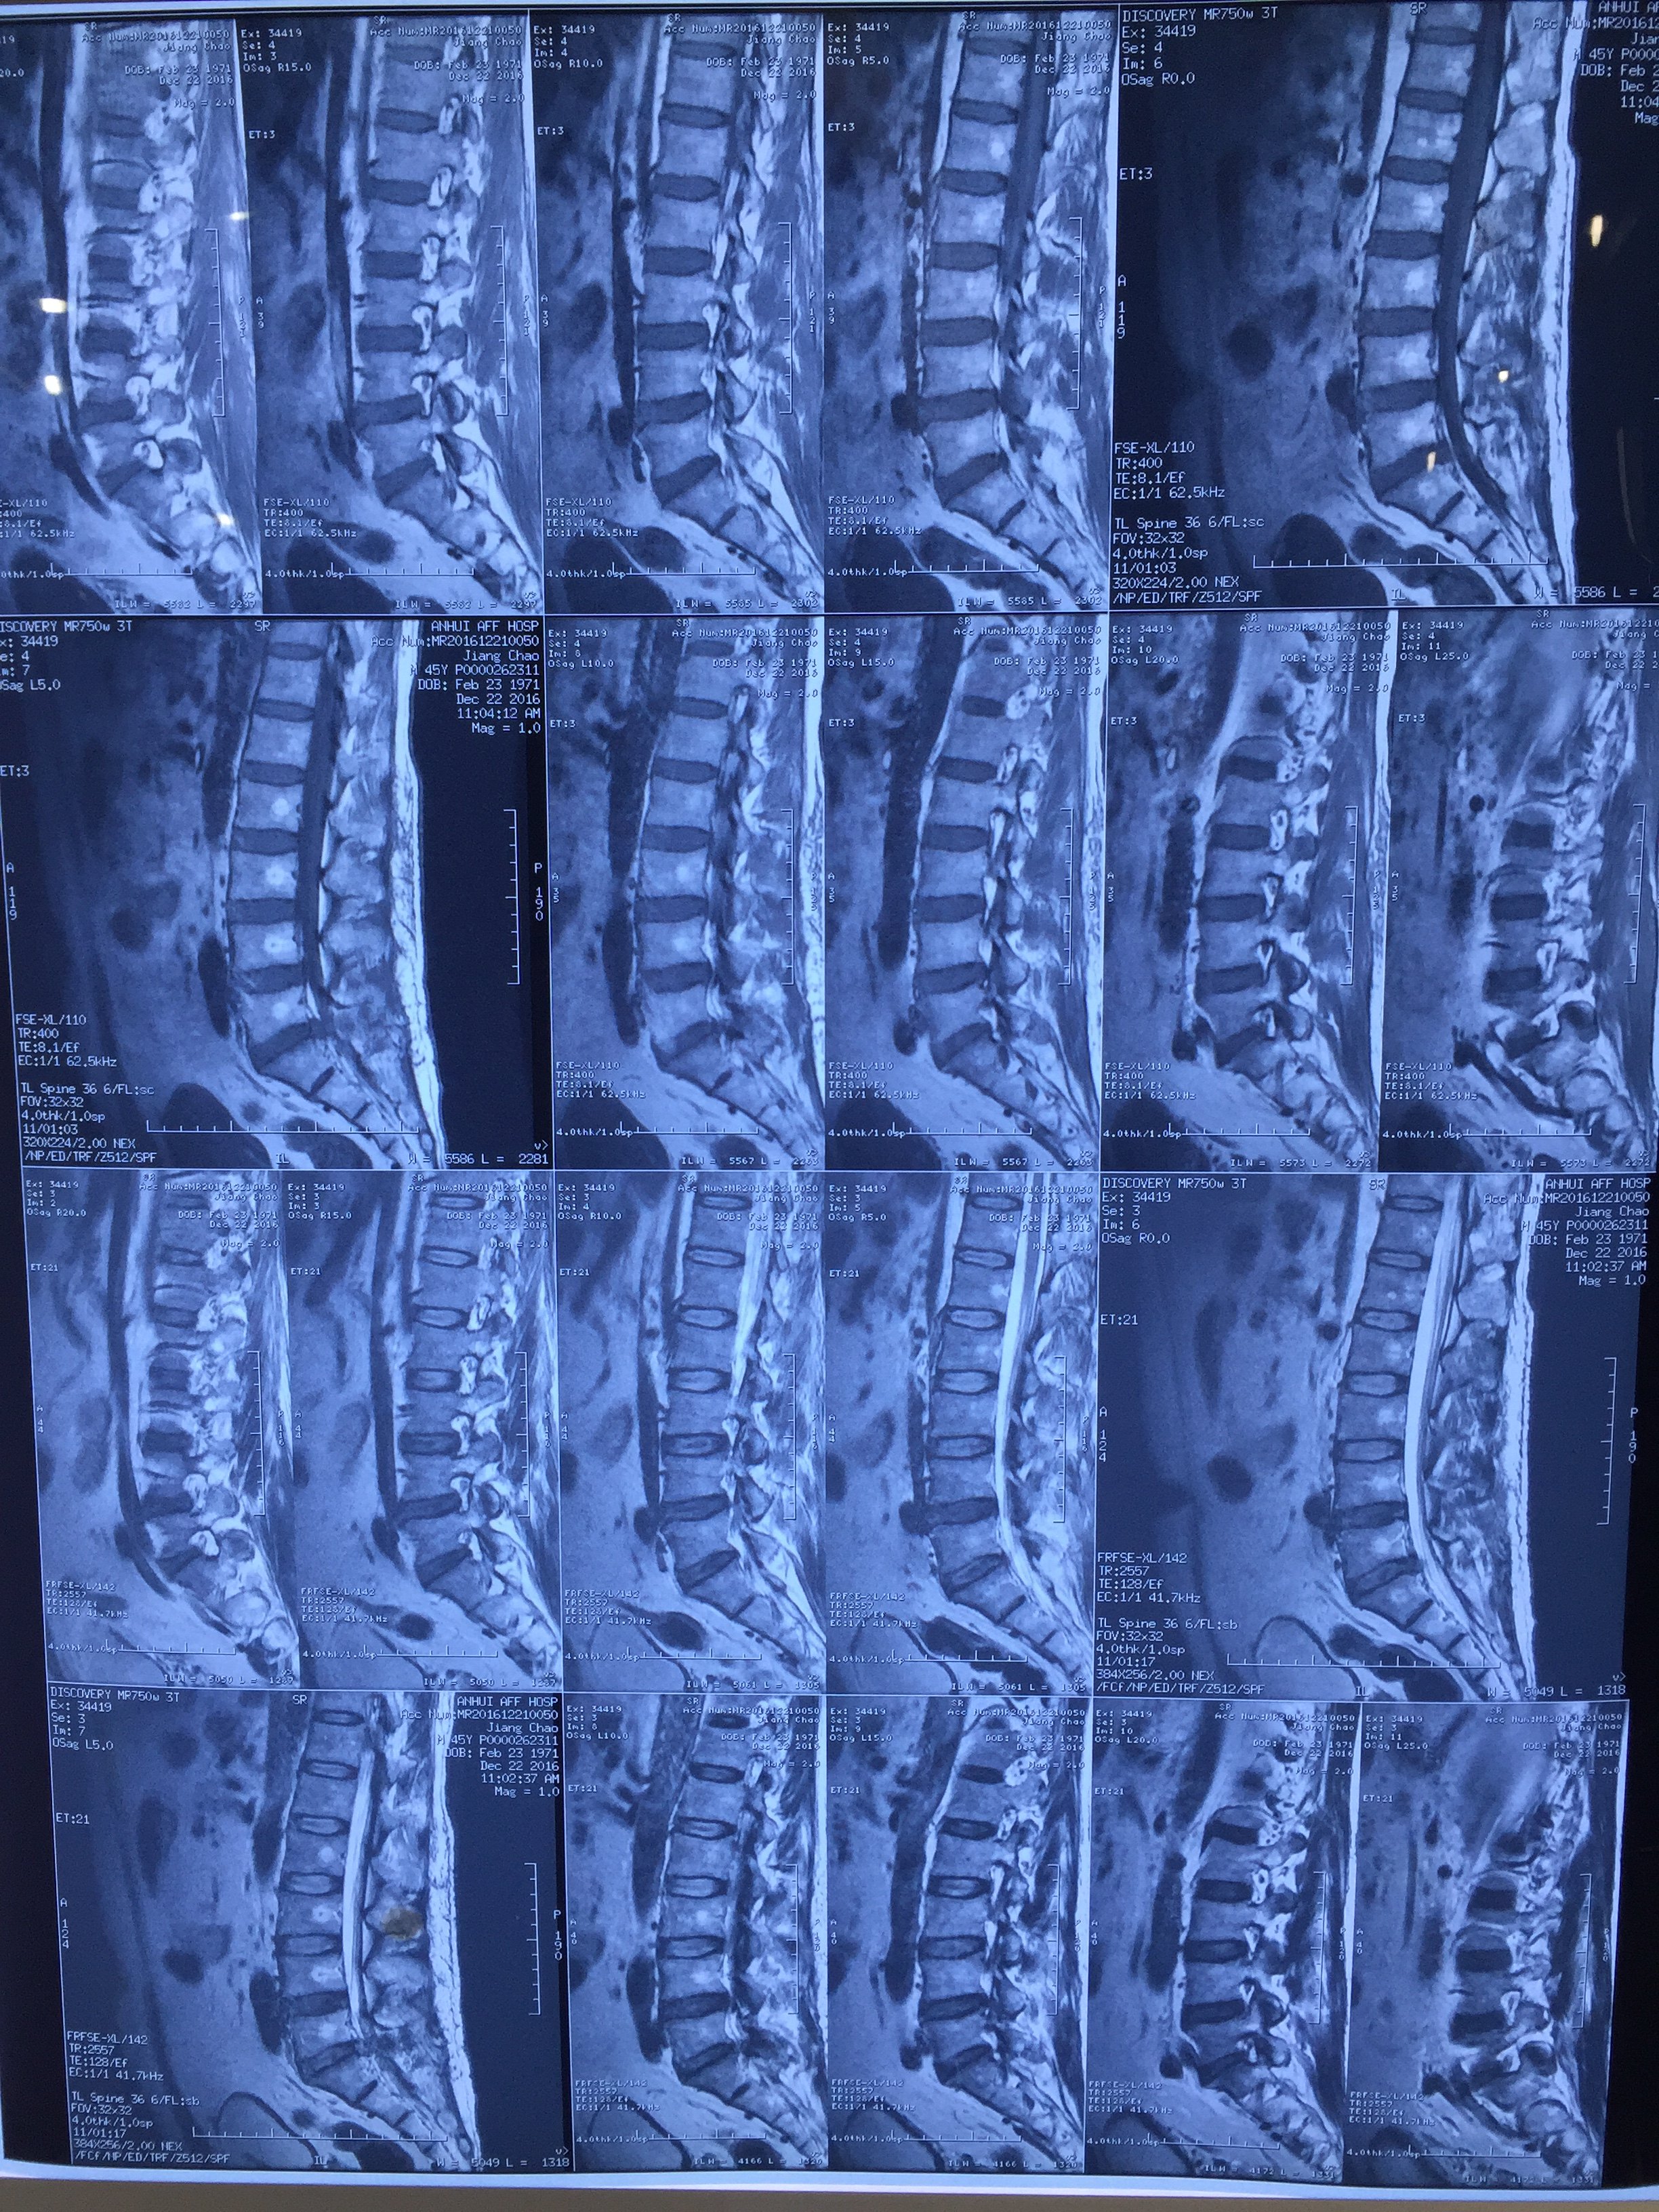 腰5骶1椎间盘突出髓核偏左侧突出,引起严重左腿疼痛